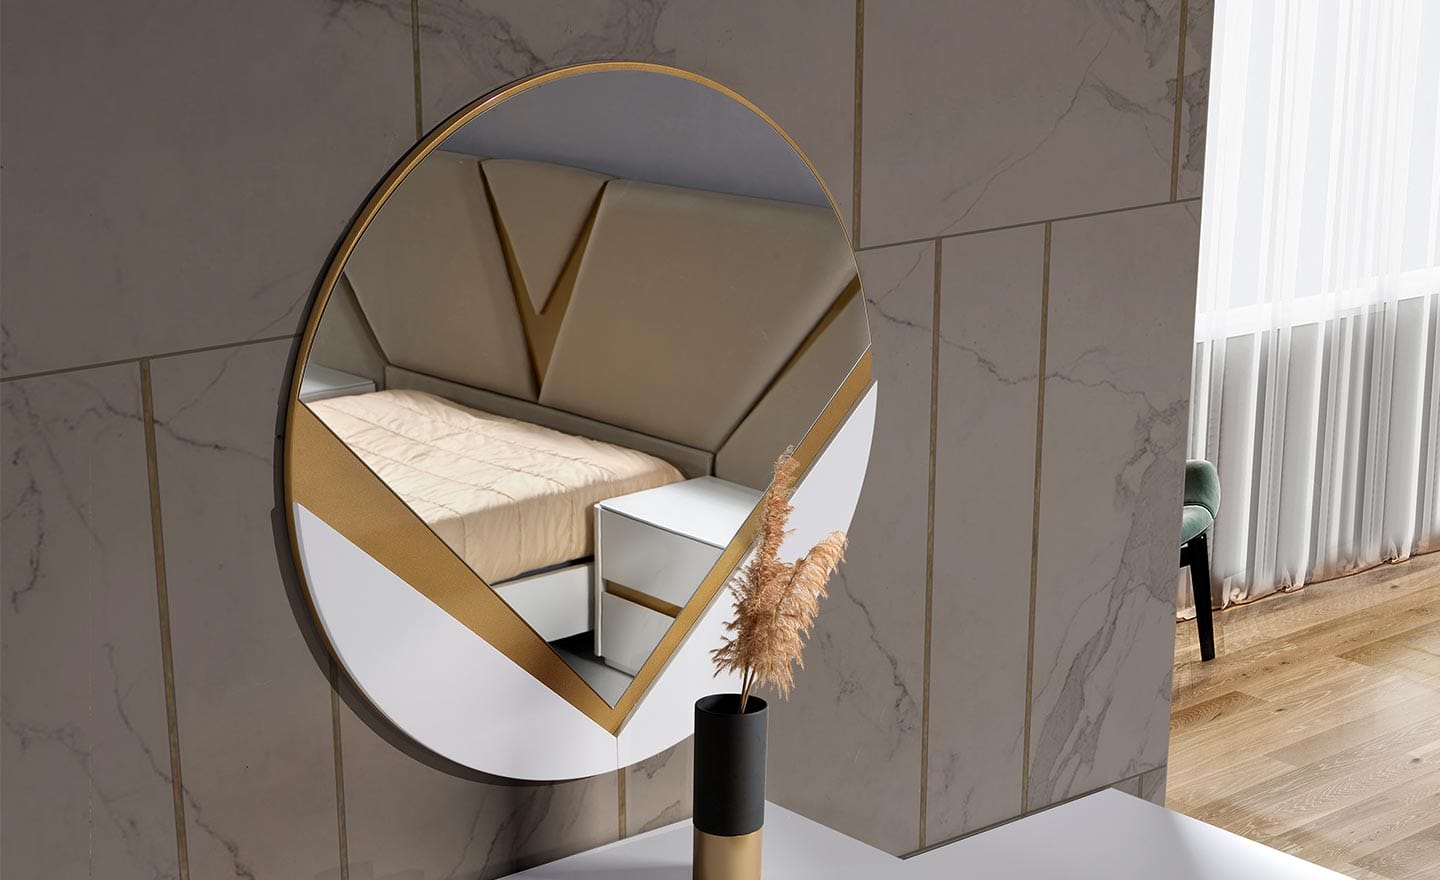 Espelho Avanti - Espelho Redondo, Moderno e Elegante em MDF com Detalhes Lacados